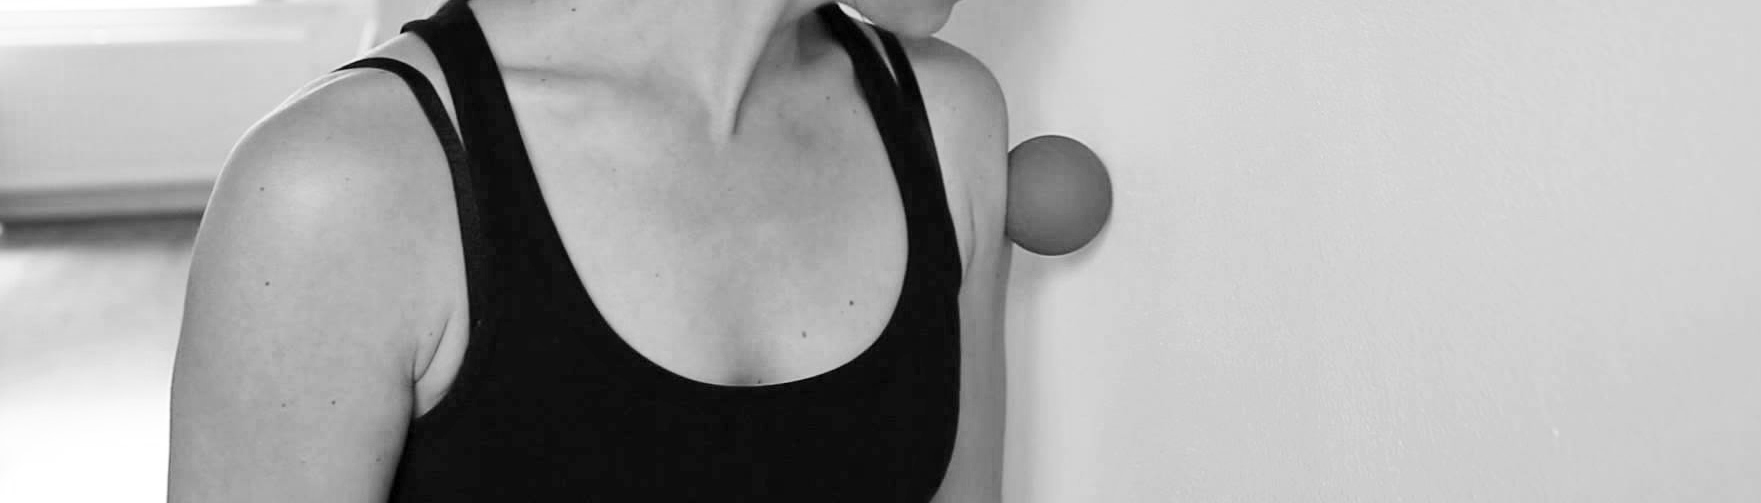 Oefentherapie Bolsward triggerpoints behandelen met massagebal schouderspieren